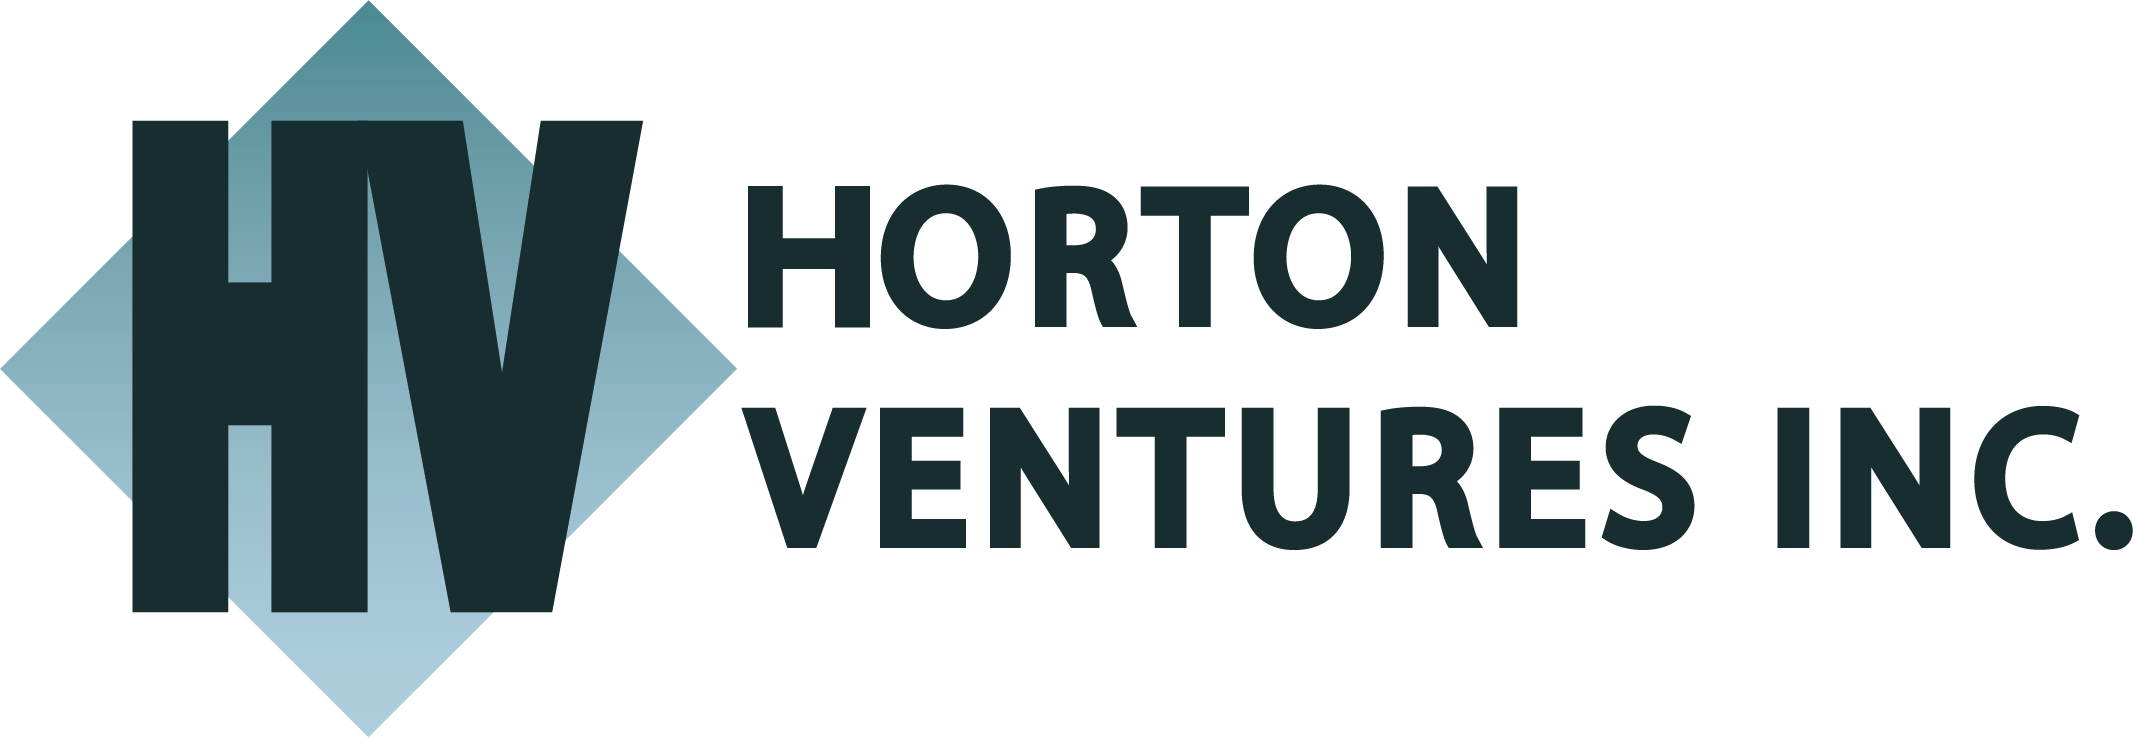 Horton Ventures Inc